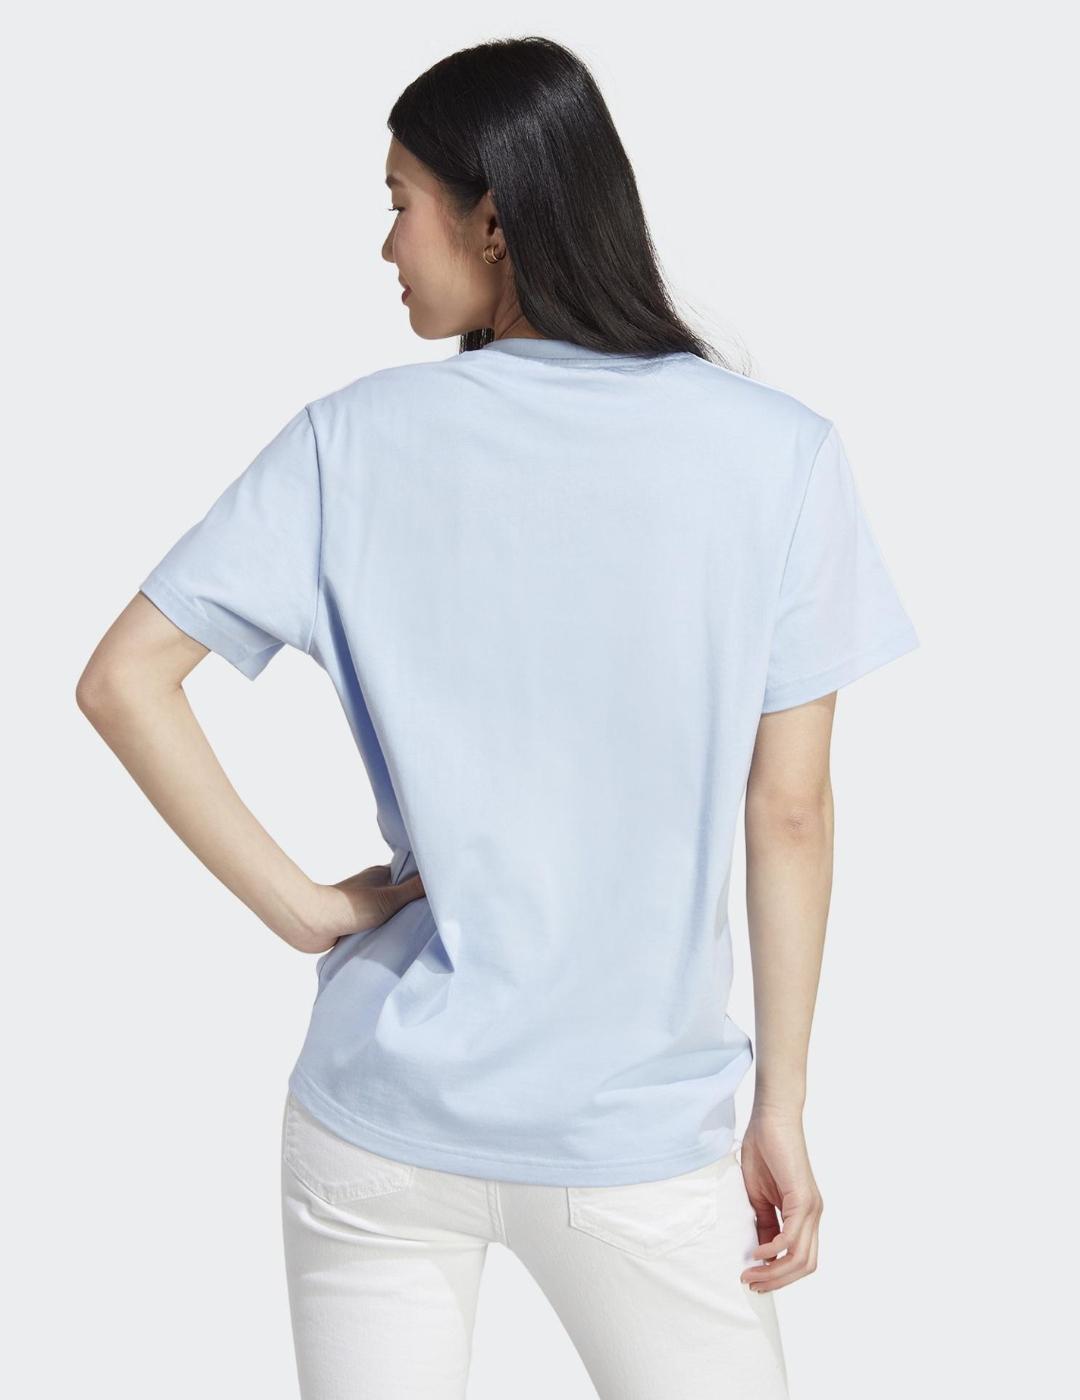 Camiseta Adidas para Mujer Azul/Blanco